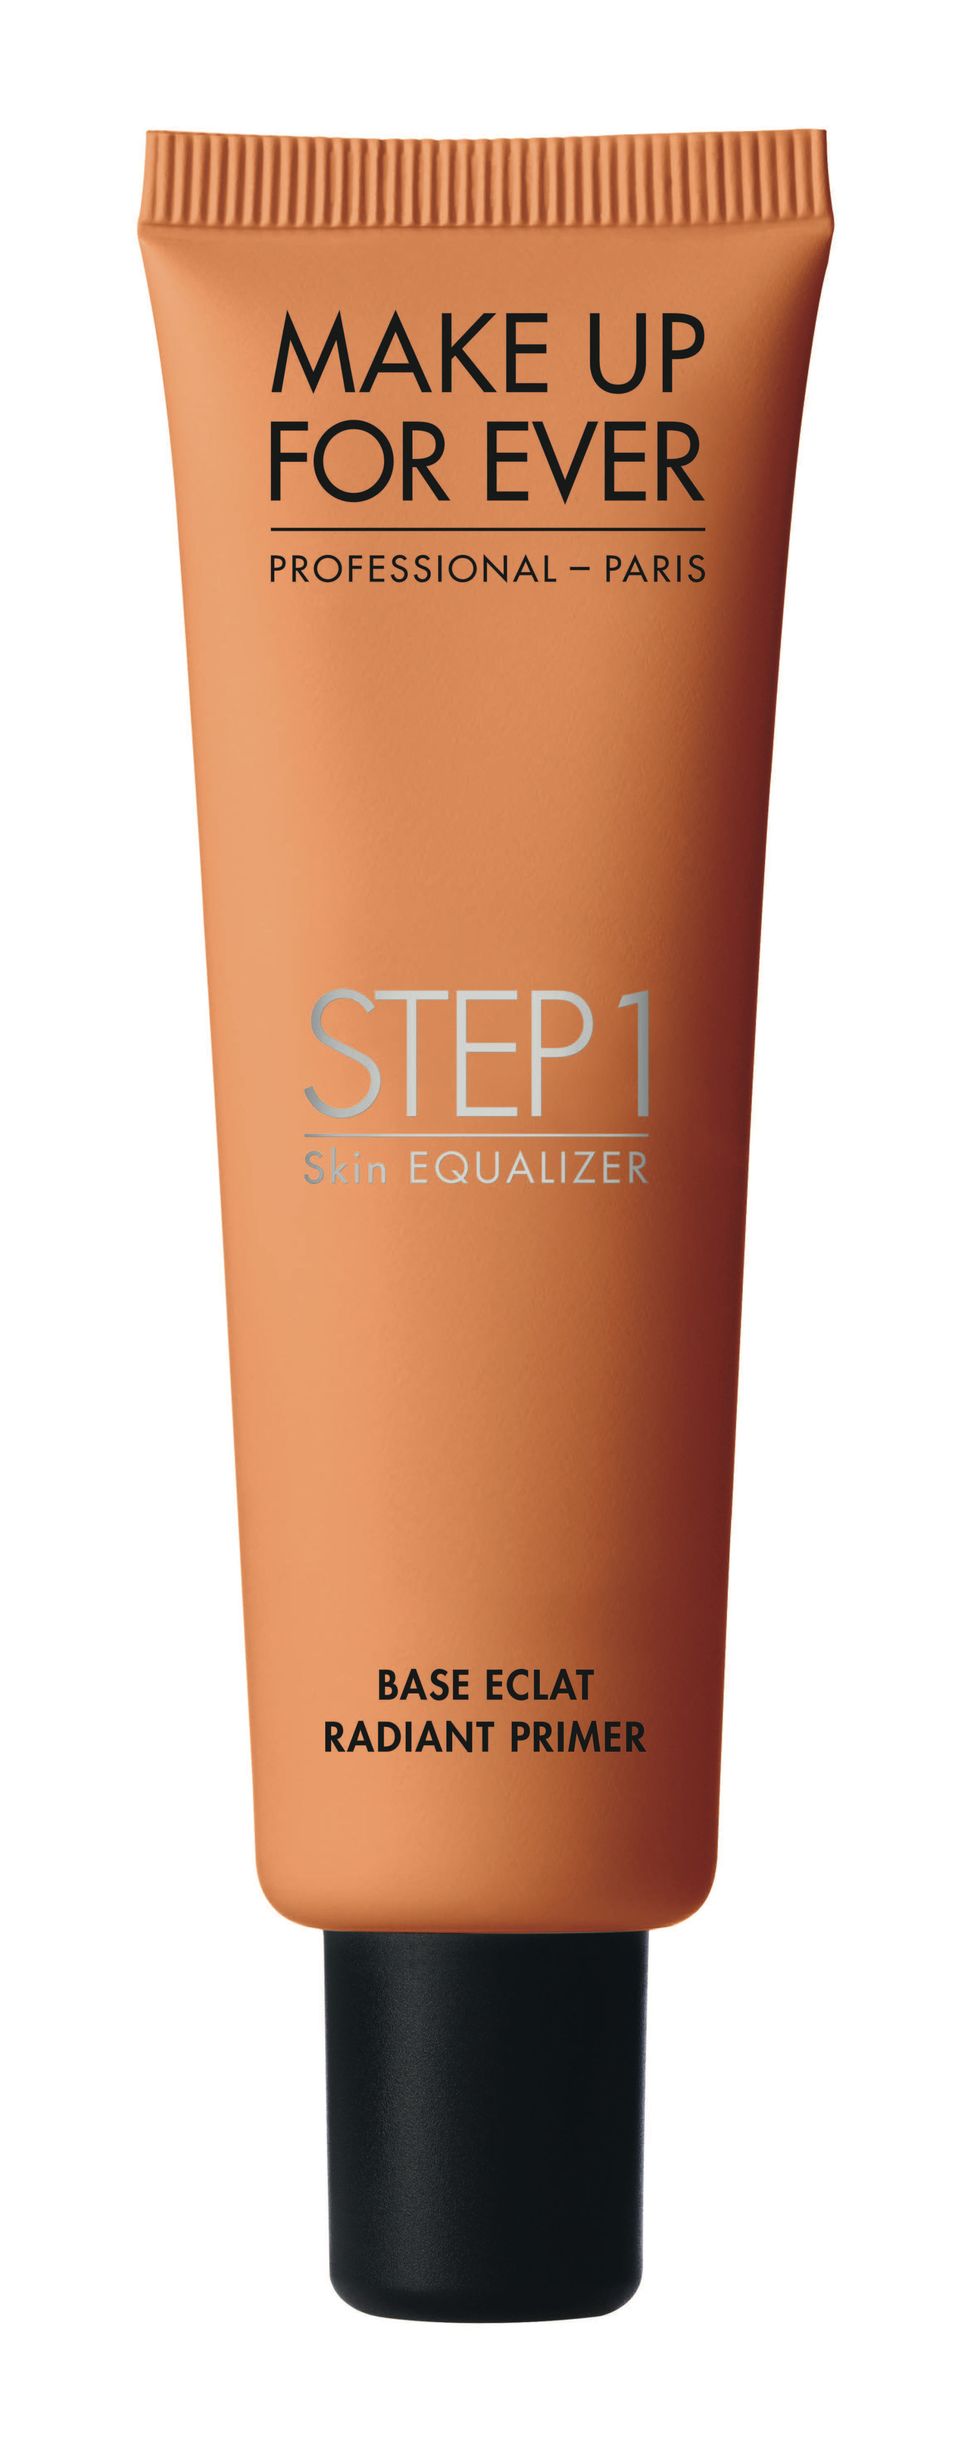 <p>Una base colorata che dona luminosità ad ogni tipo di pelle: Step 1 Skin Equalizer Base Eclat di Make up Forever (5 tonalità - € 36,00).</p>